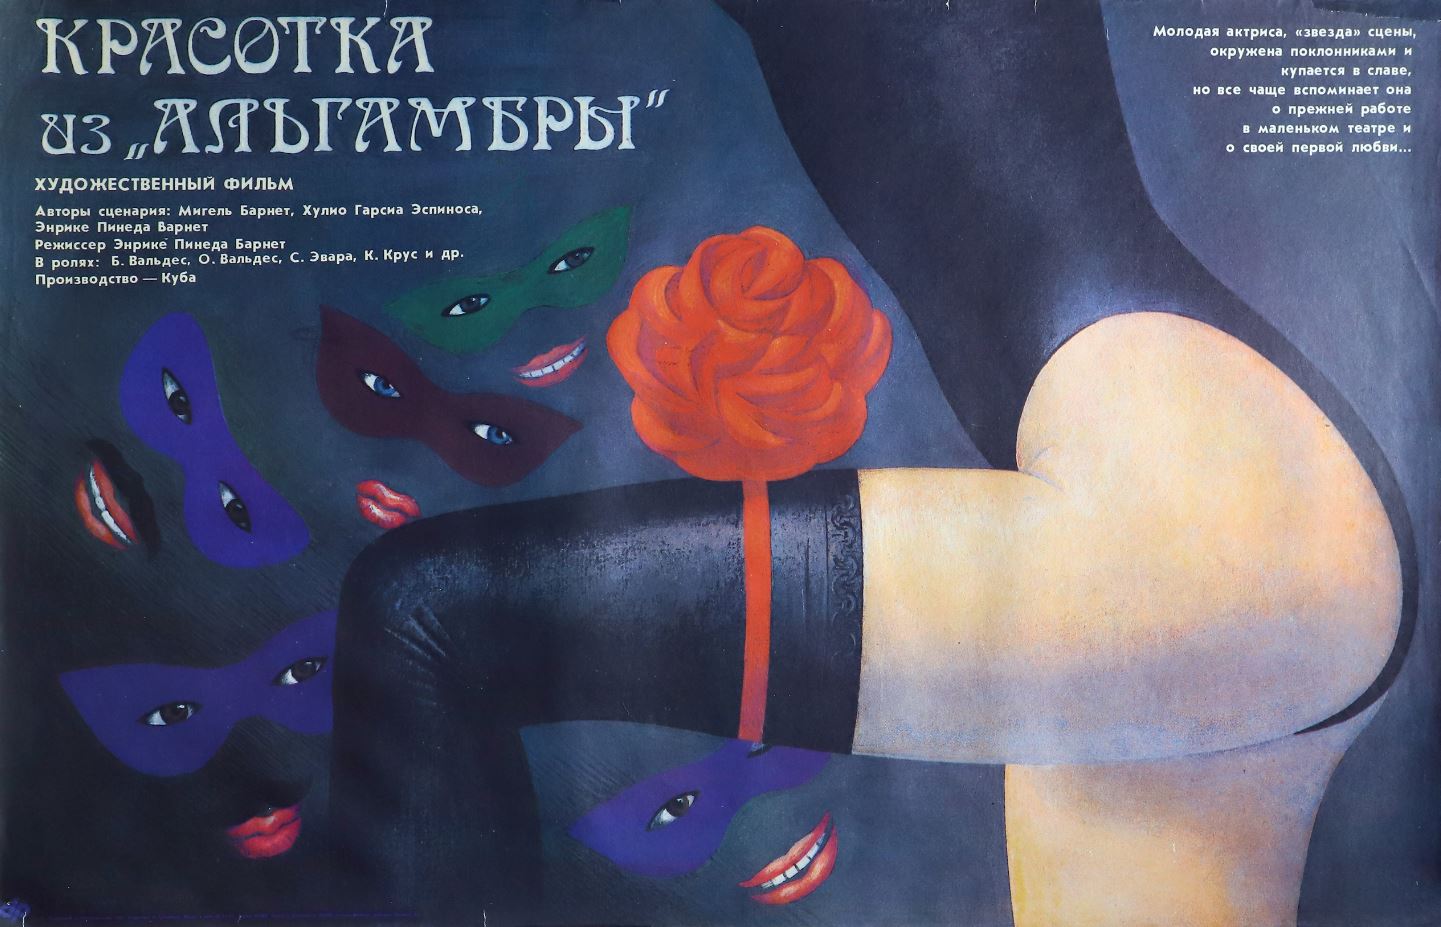 Время летать: советский киноплакат 1970–1980-х годов